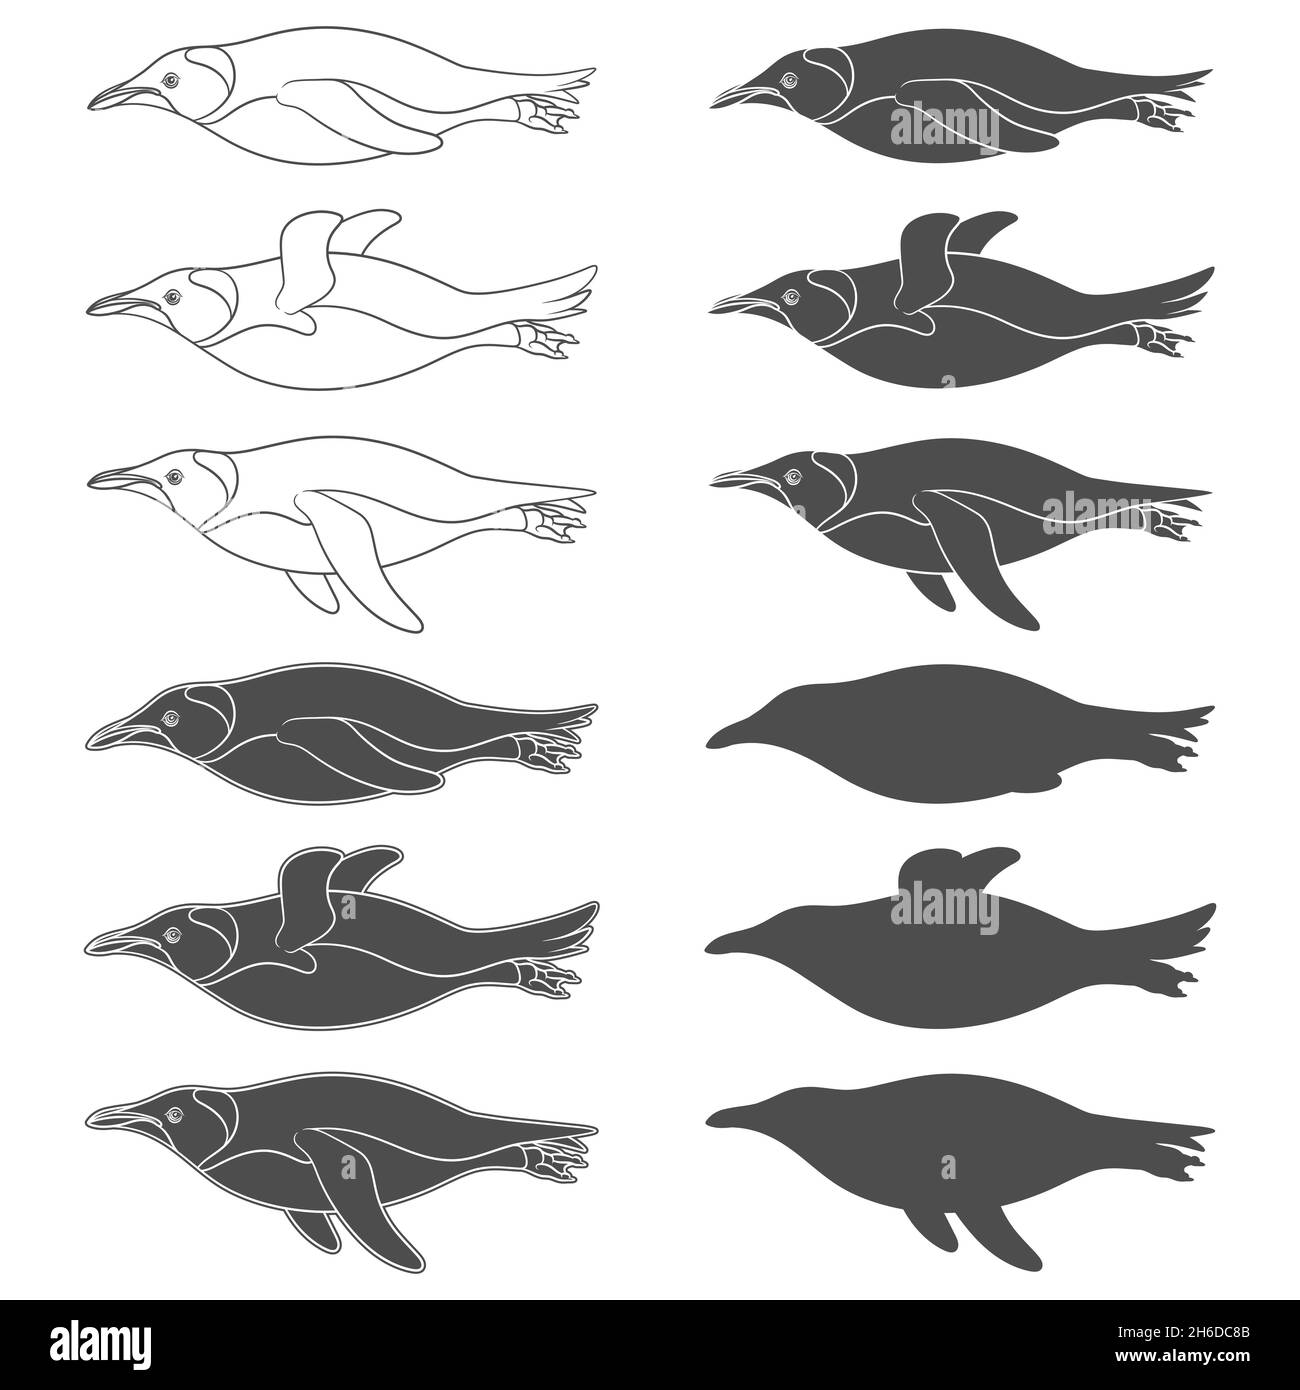 Set mit Schwarz-Weiß-Illustrationen mit schwimmenden Pinguinen. Isolierte Vektorobjekte auf weißem Hintergrund. Stock Vektor